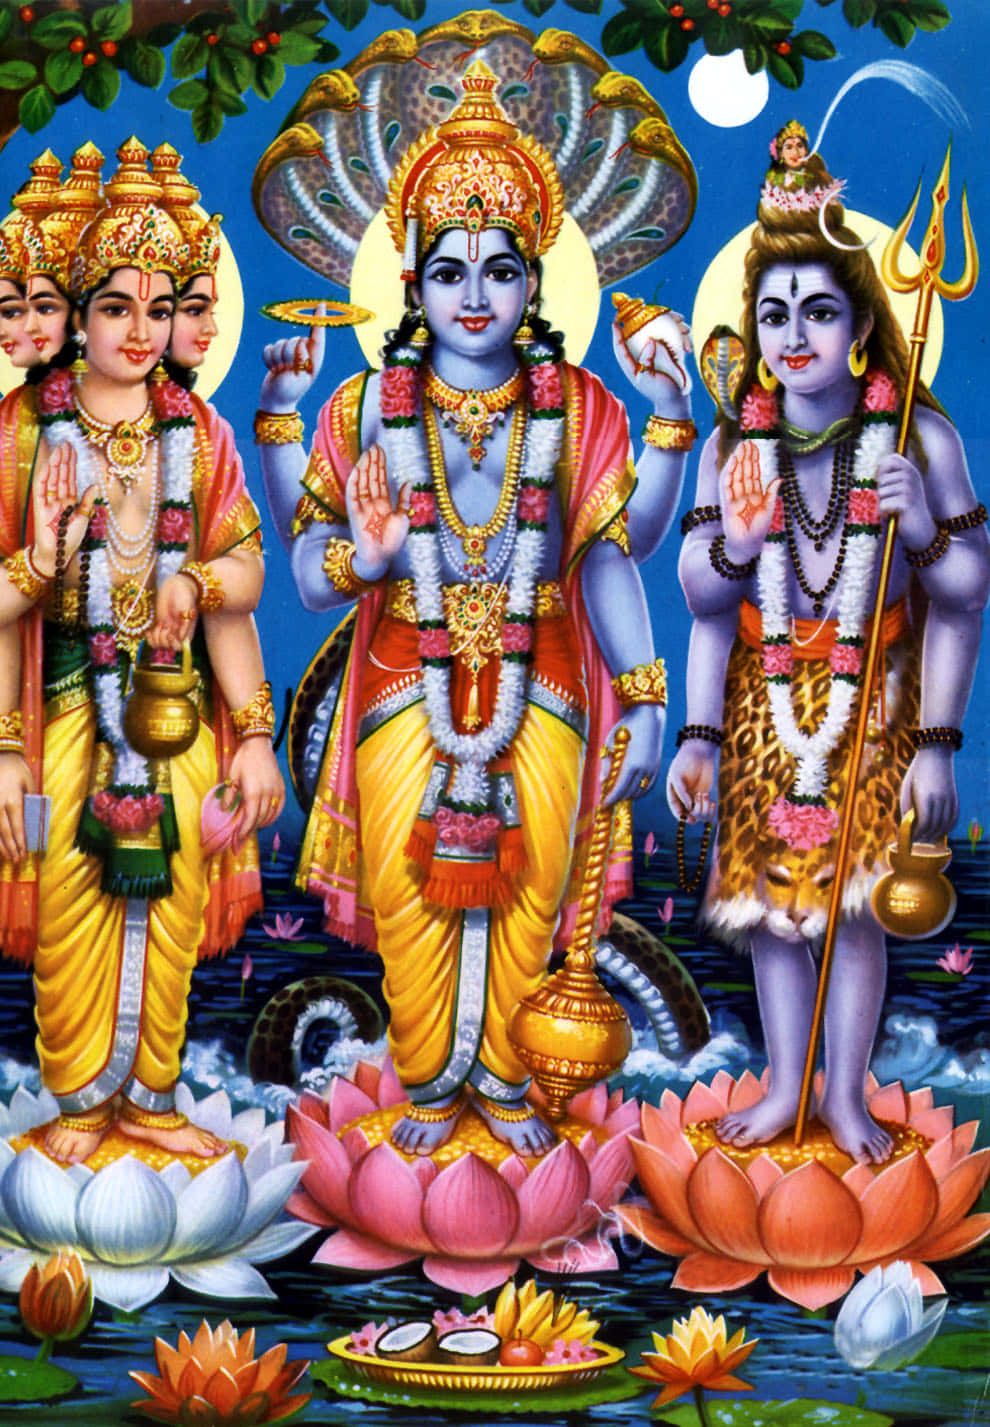 Imagendel Dios Hindú Brahma Vishnu Maheshwara